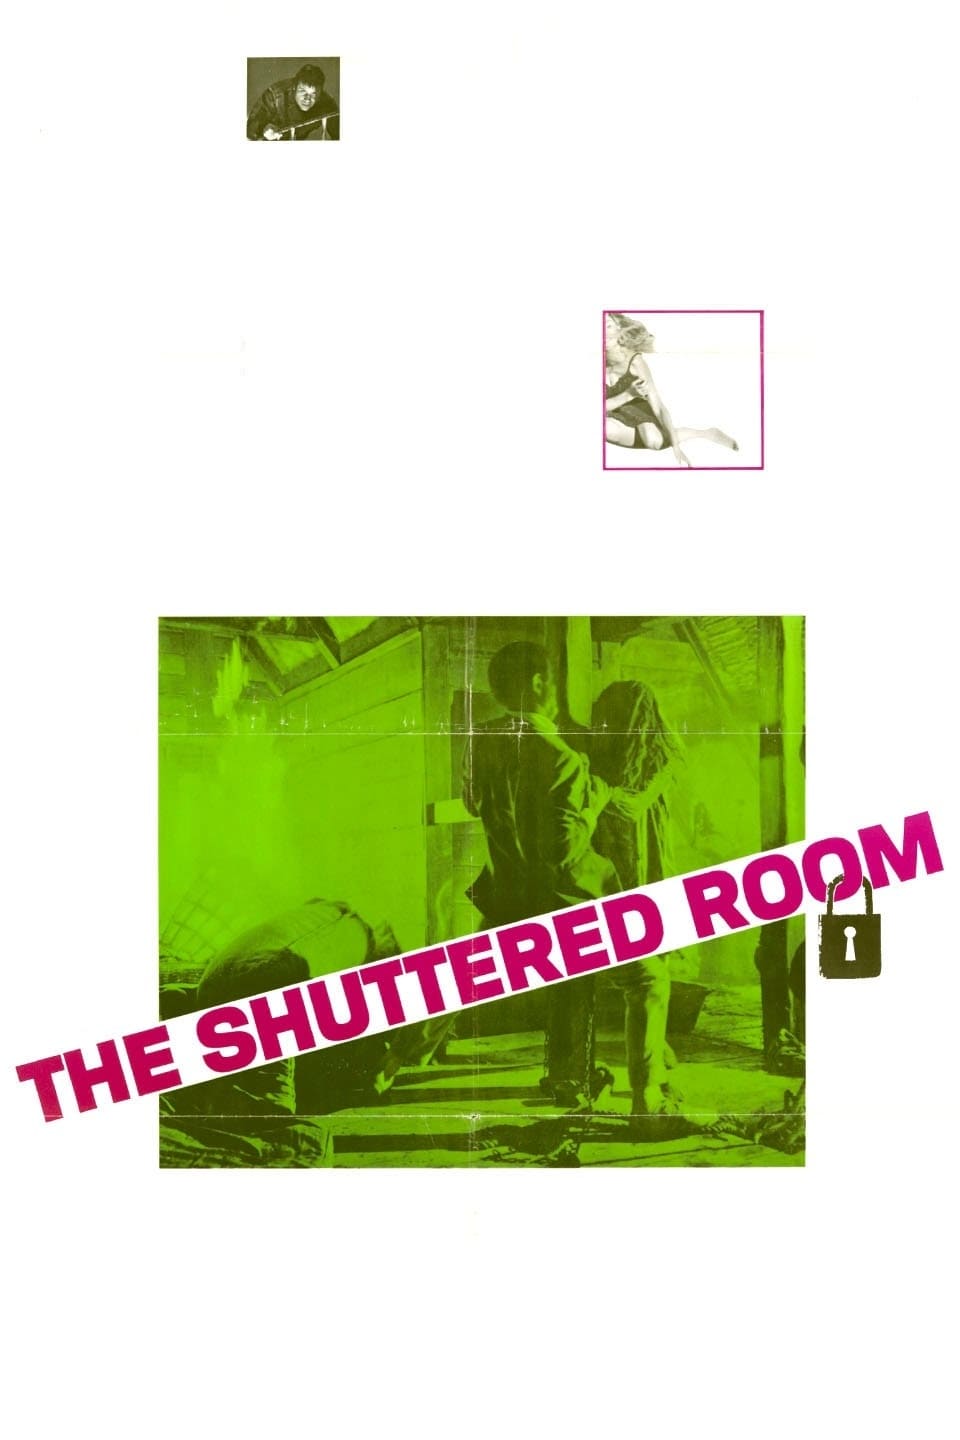 The Shuttered Room (1967)